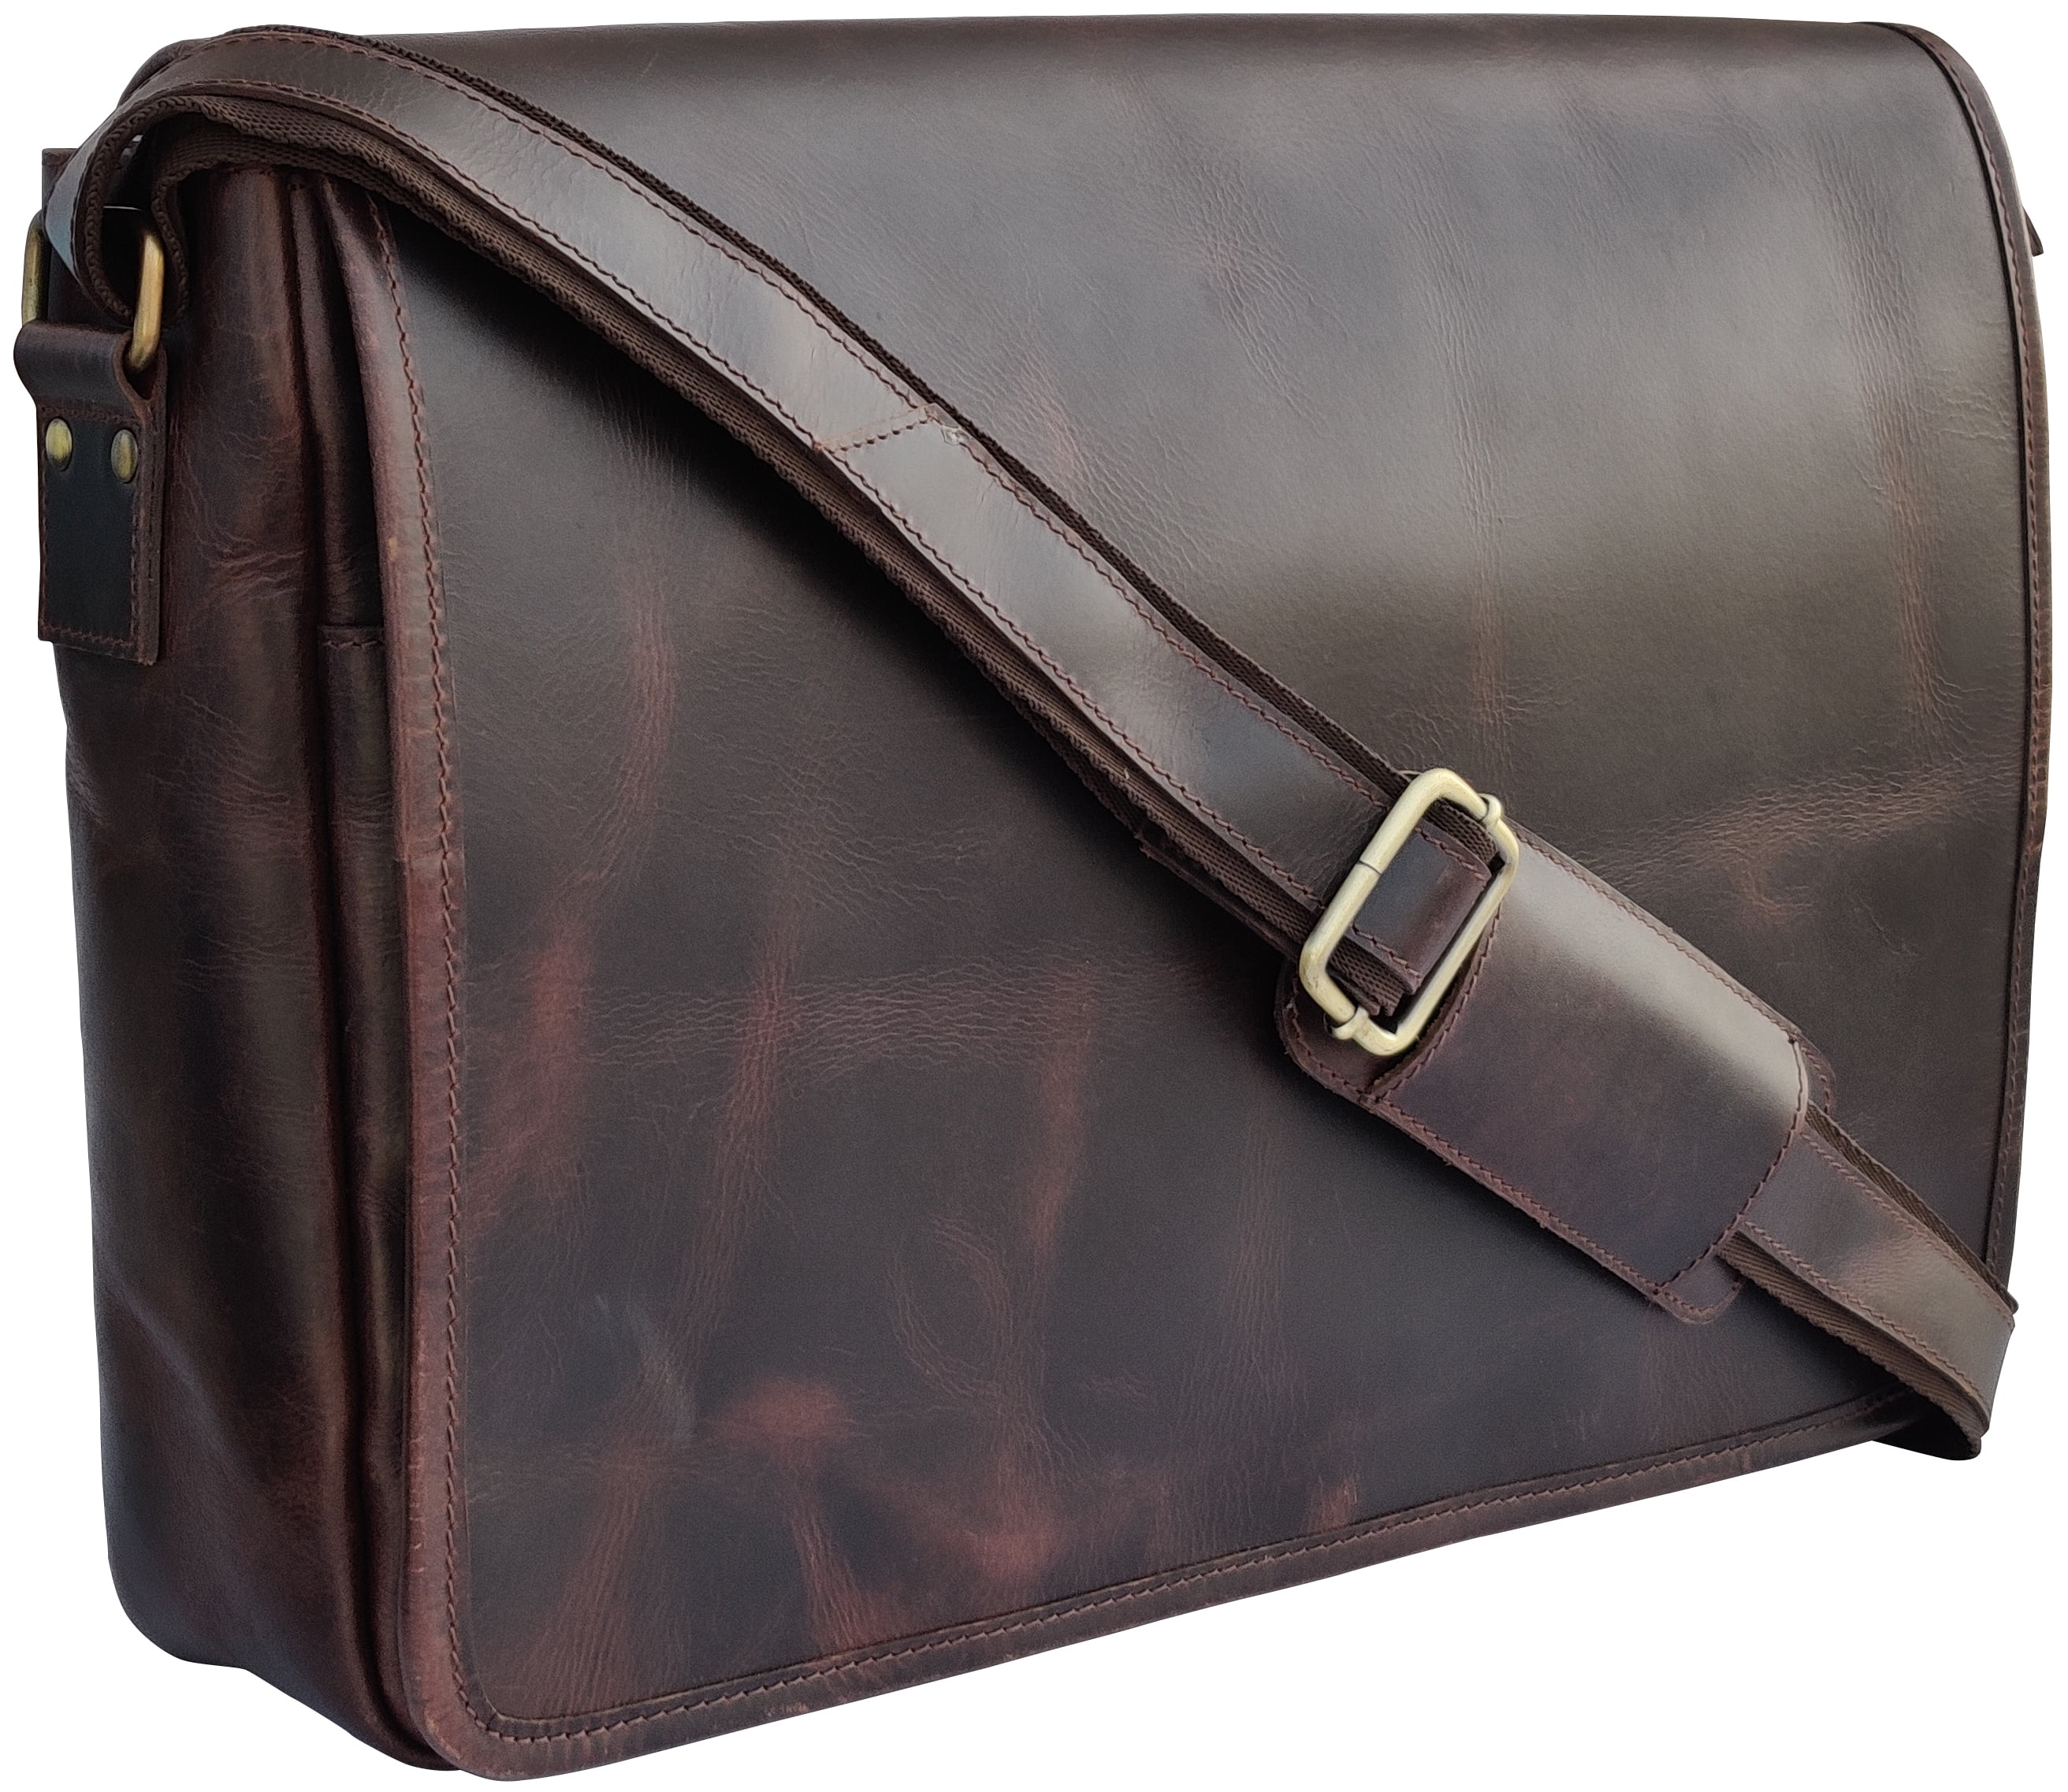 Men Genuine Leather Briefcase Messenger Shoulder Laptop Business Bag Handbag